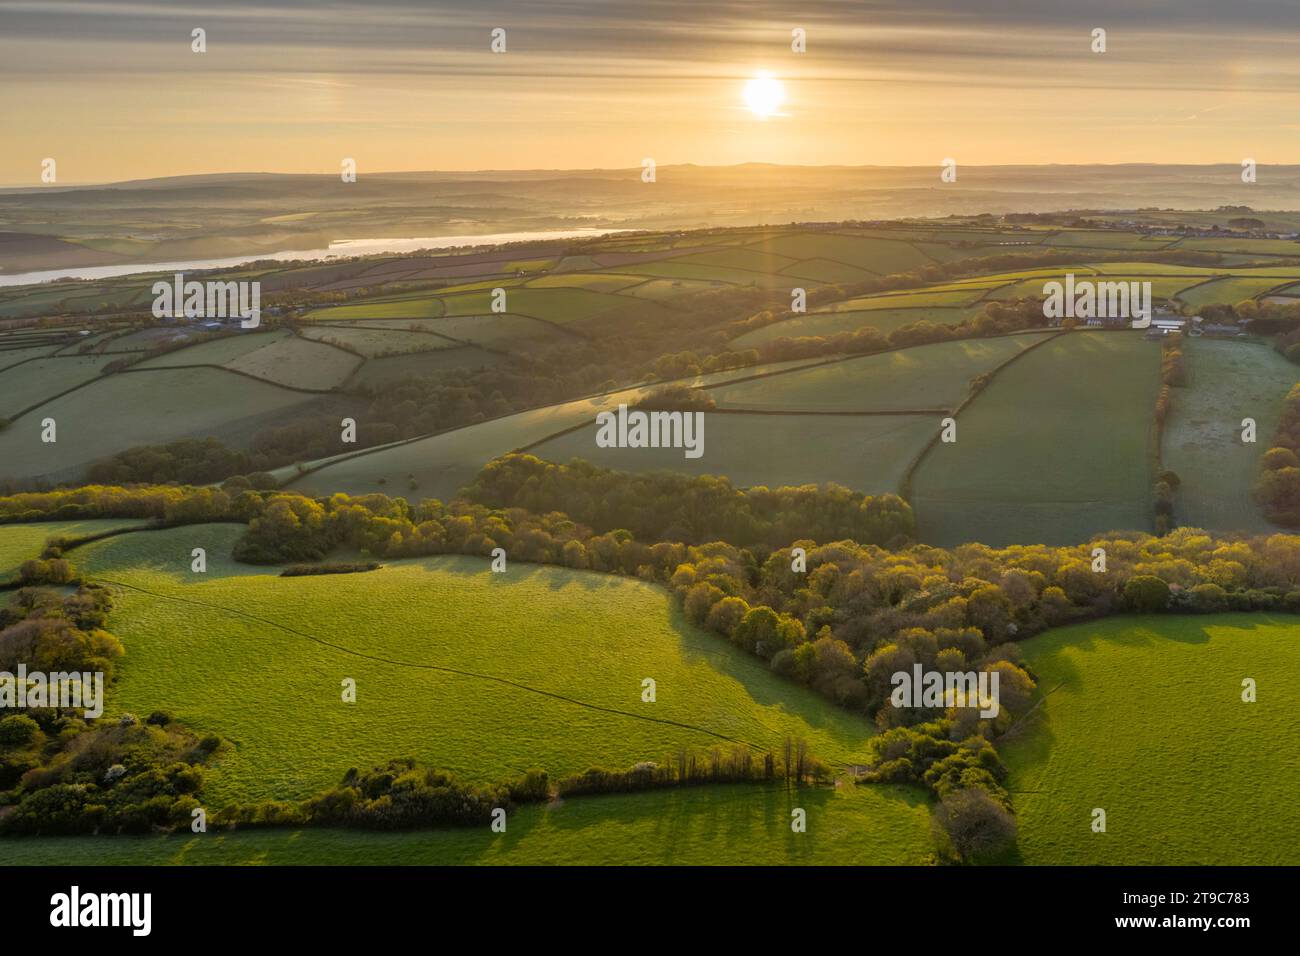 Lever du soleil sur la campagne vallonnée, Cornouailles, Angleterre. Printemps (mai) 2019. Banque D'Images